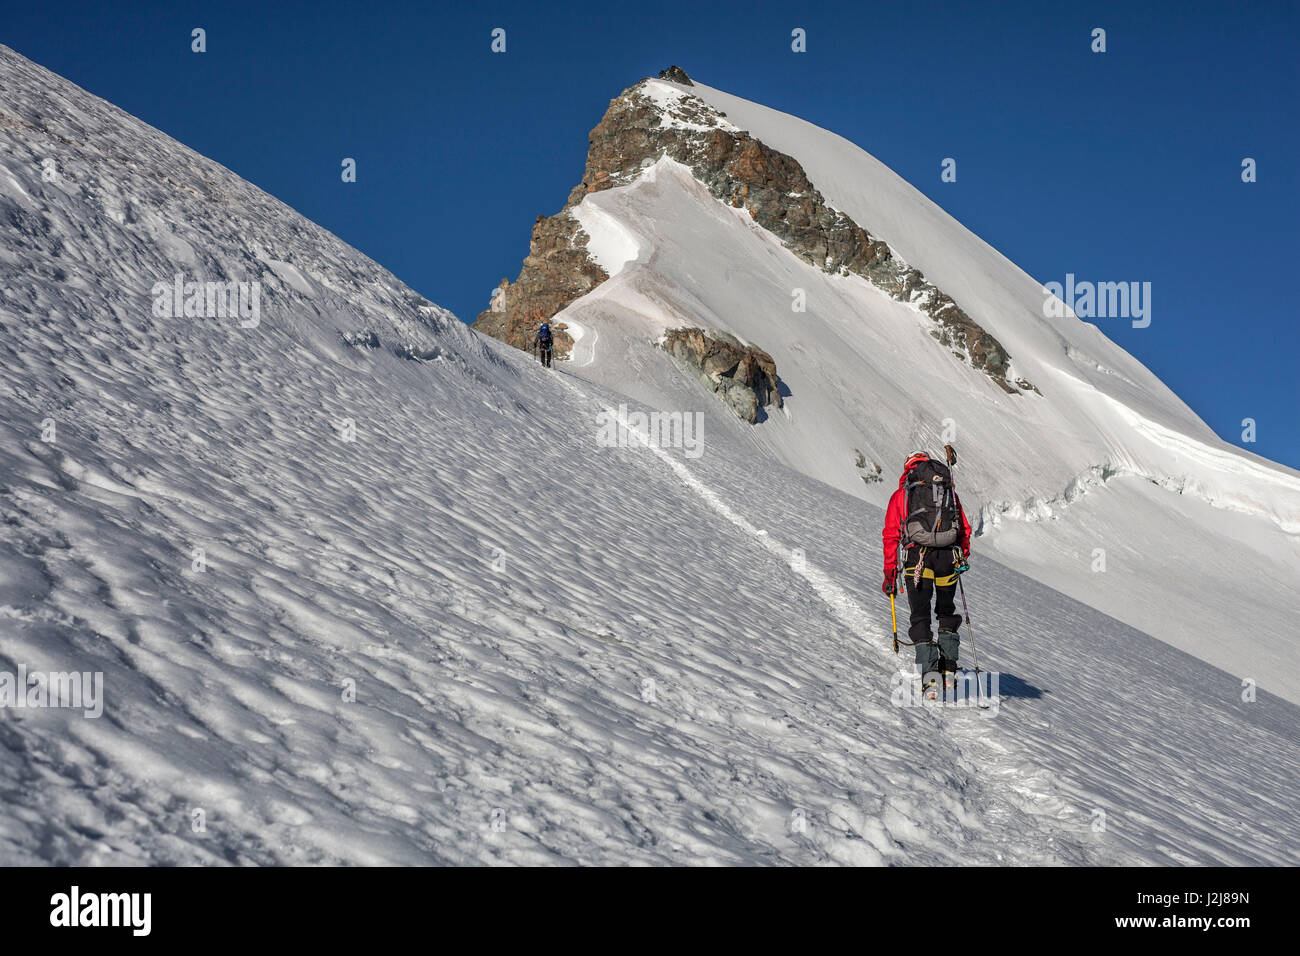 1 persona, trekking, scalata, approccio, scenario, Summit, ghiacciaio, energia, equilibrato, destinazione successo solo in Foto Stock